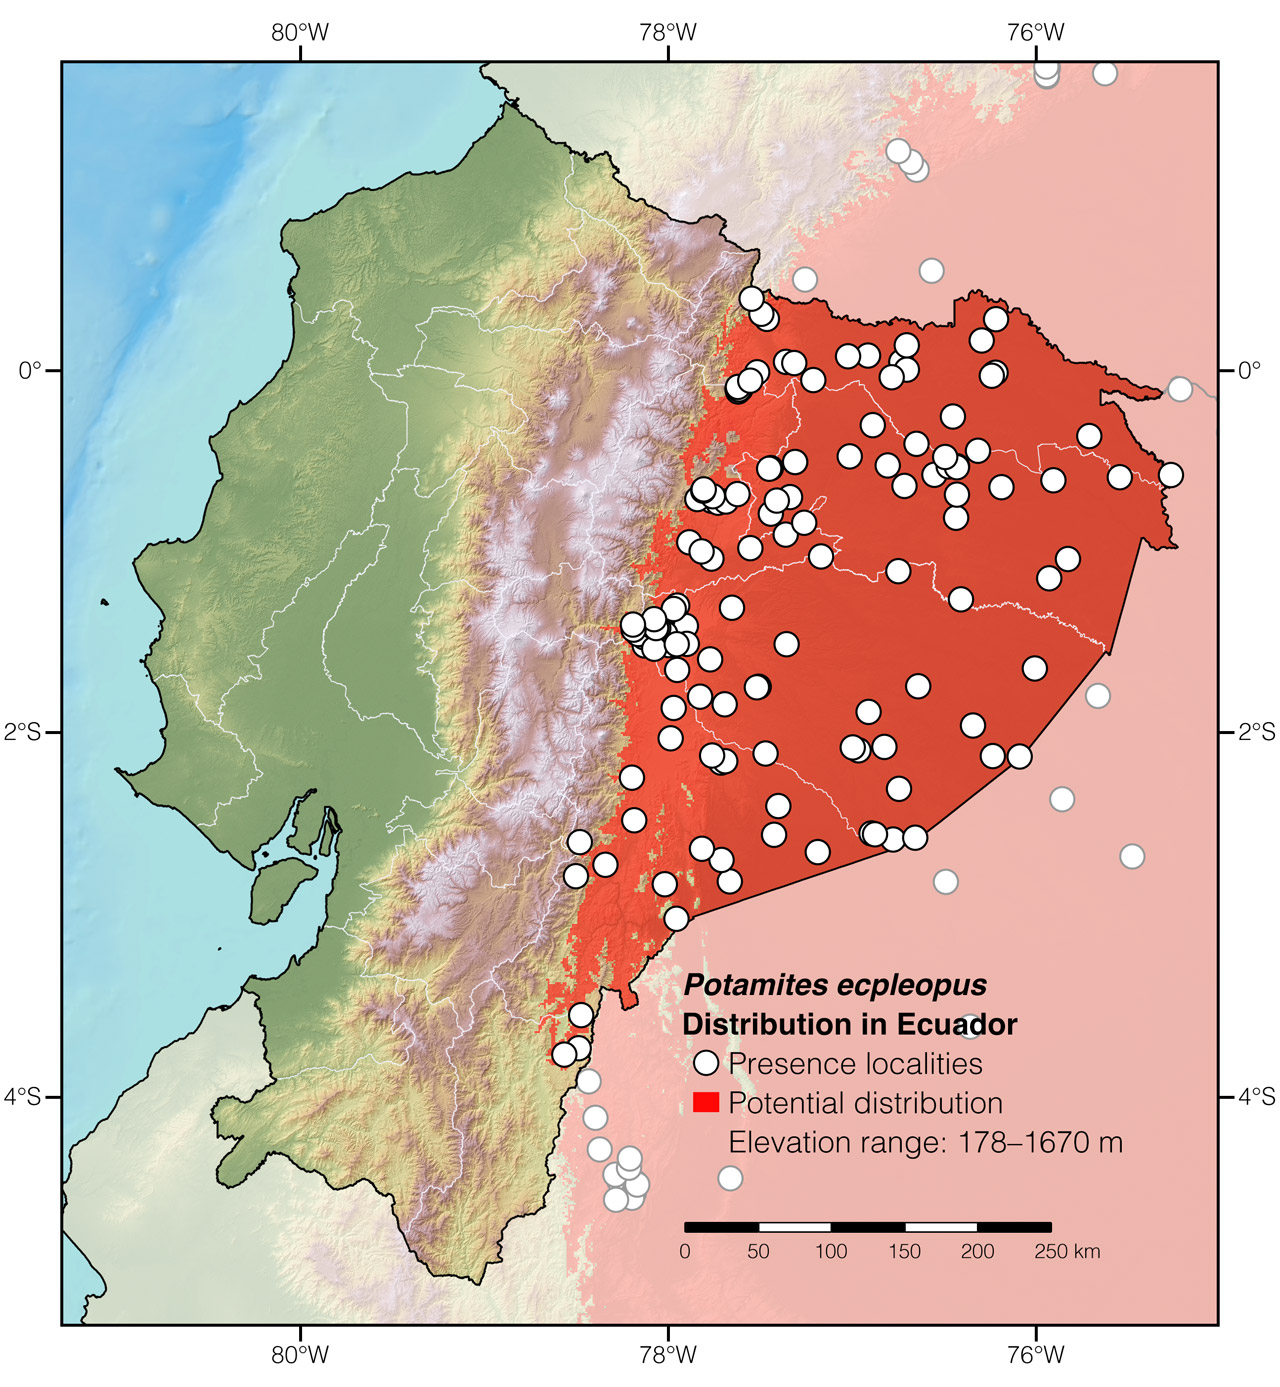 Distribution of Potamites ecpleopus in Ecuador